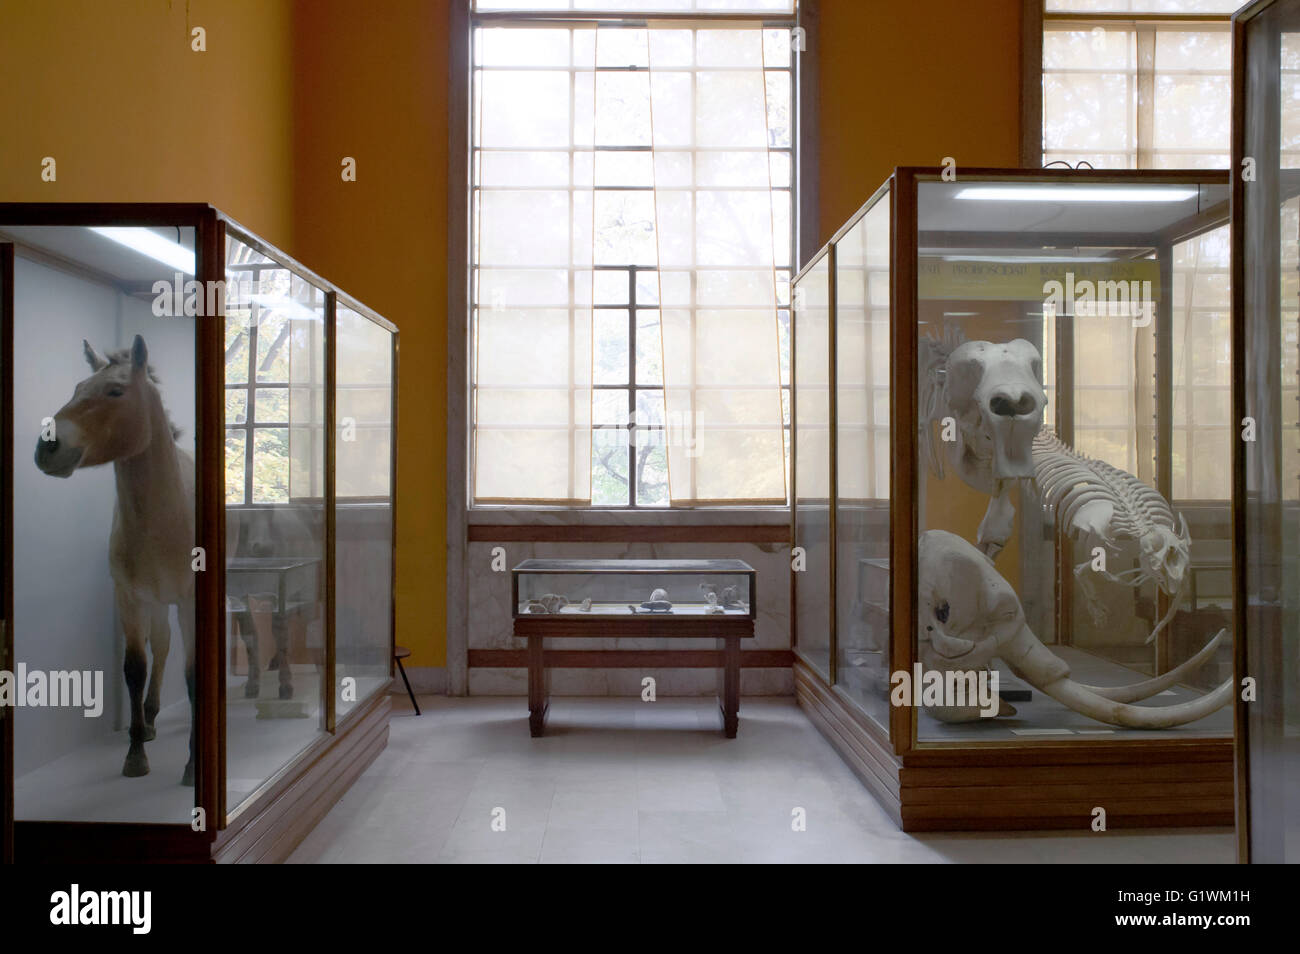 Museo de Historia Natural, animales de peluche en vitrinas: burro y huesos de animales Foto de stock